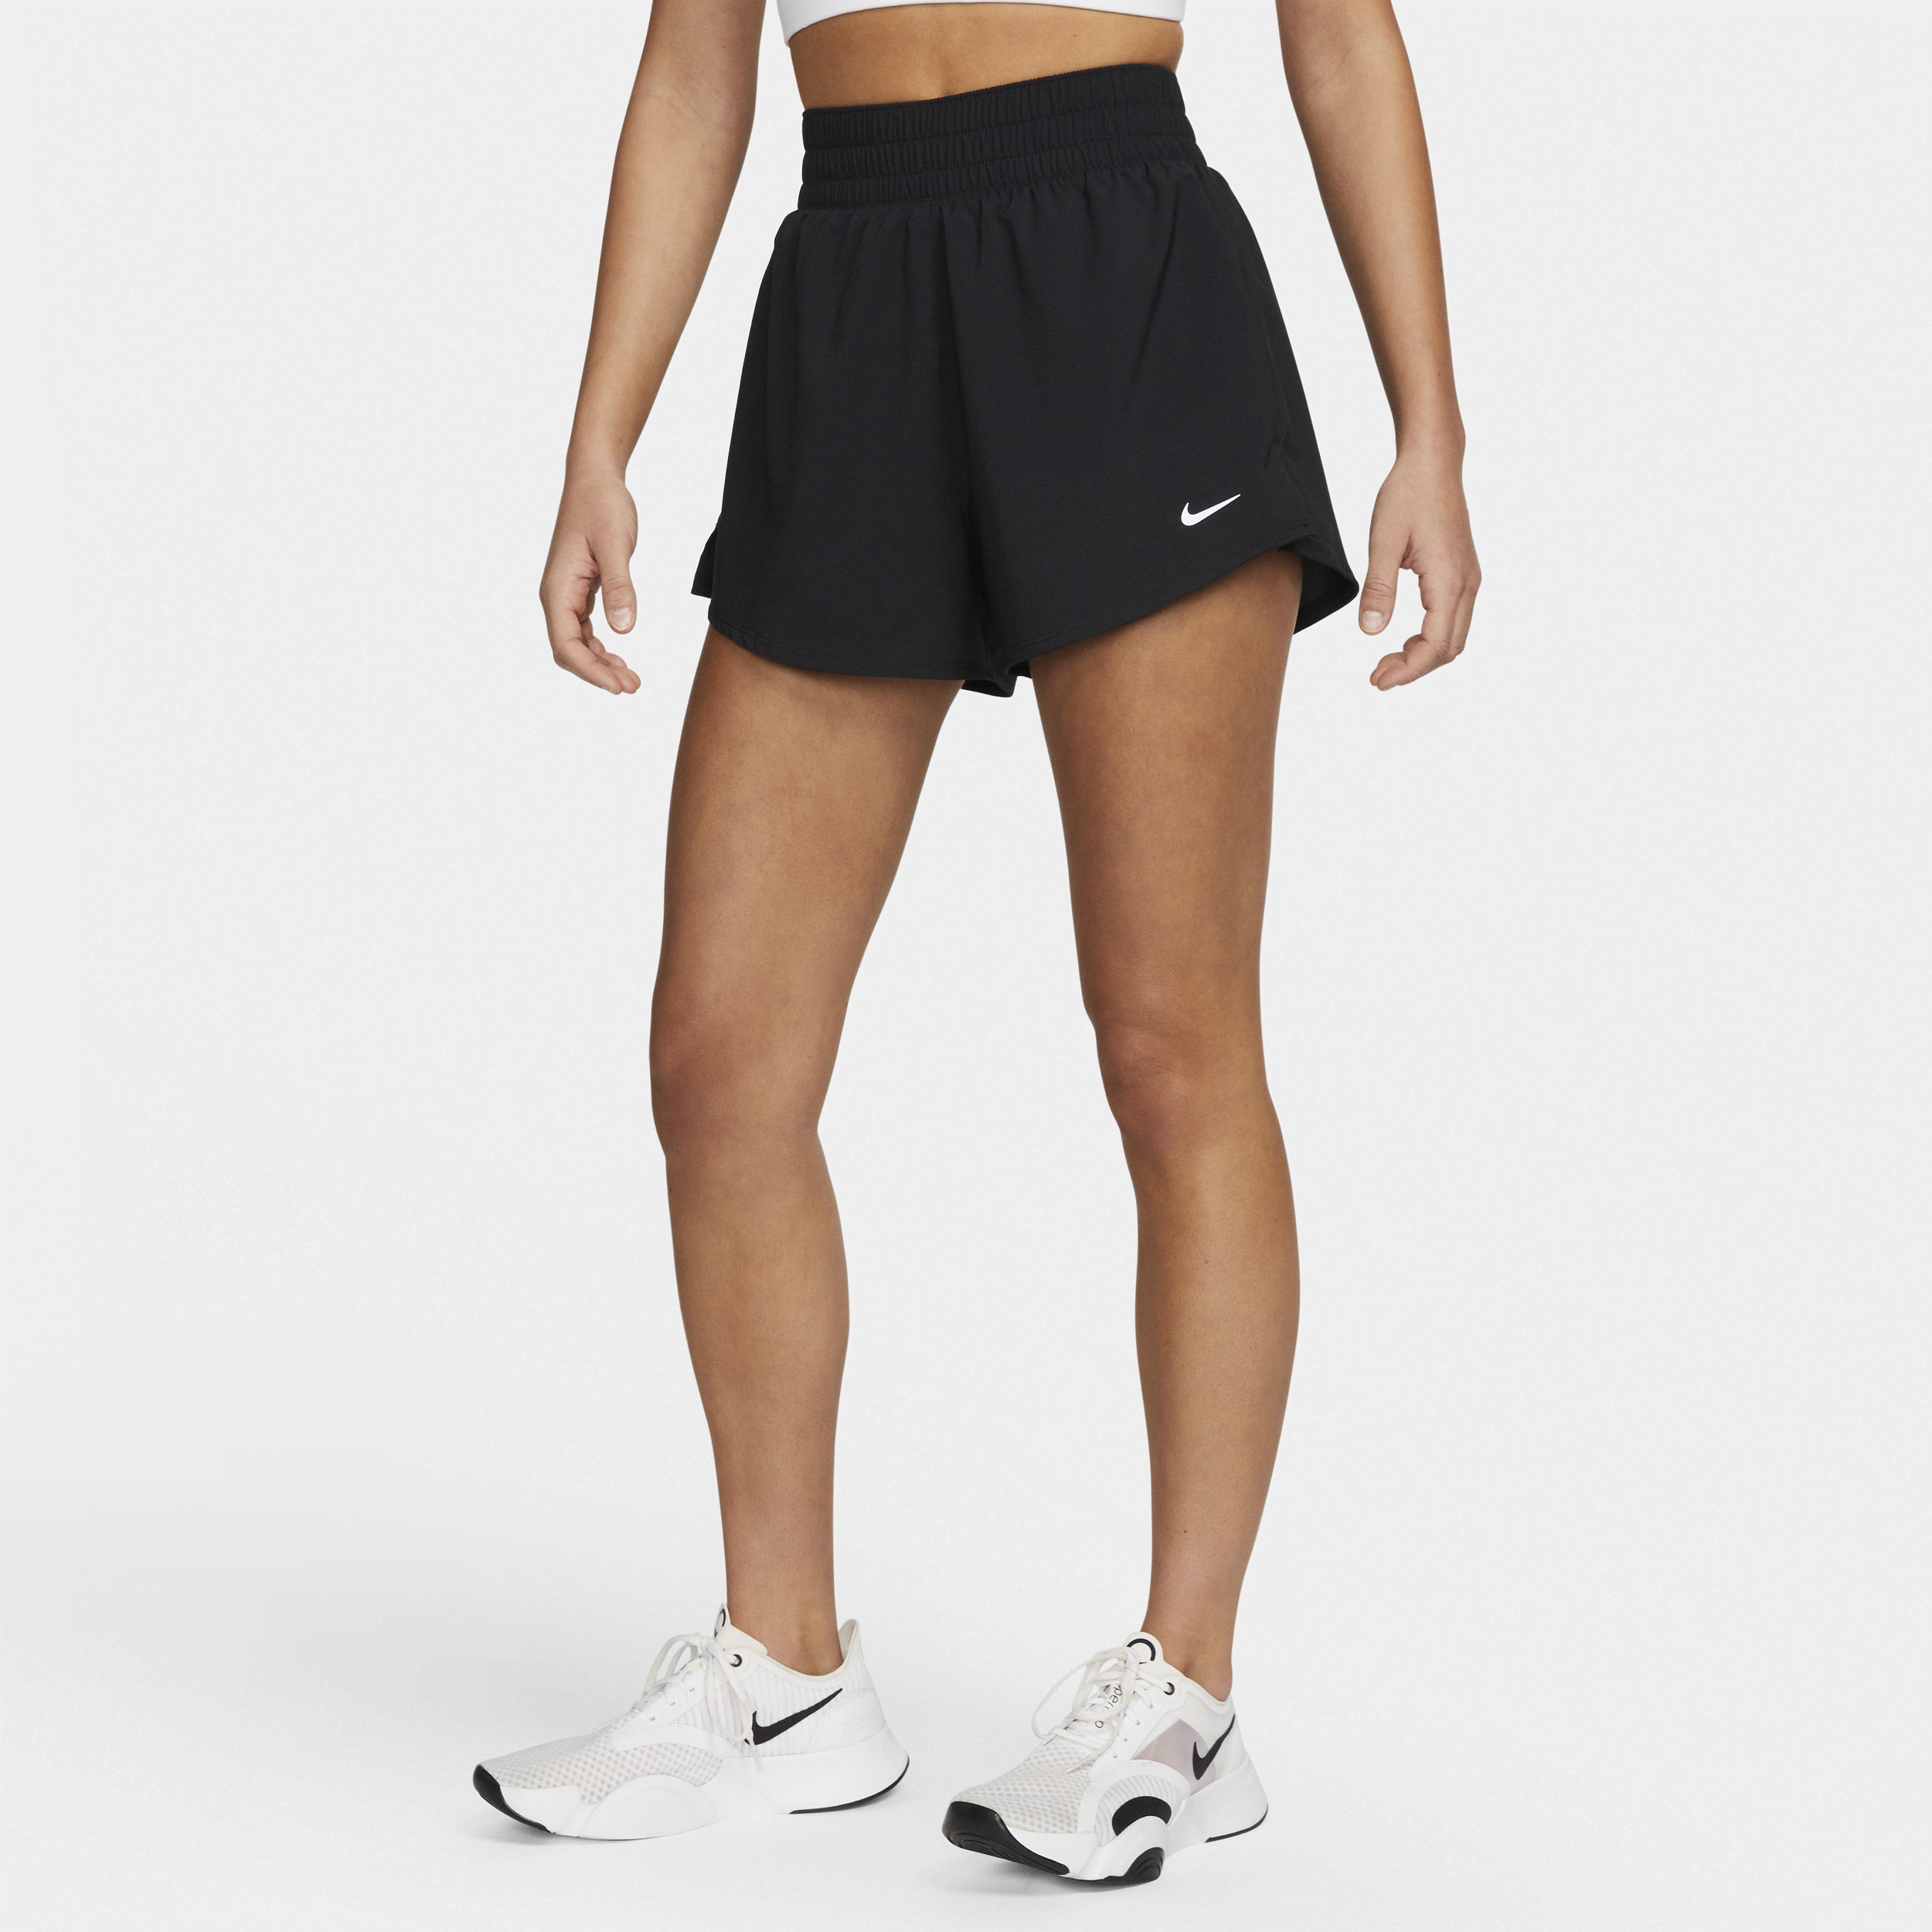 Højtaljede Nike One-Dri-FIT-2-in-1-shorts (7,5 cm) til kvinder - sort